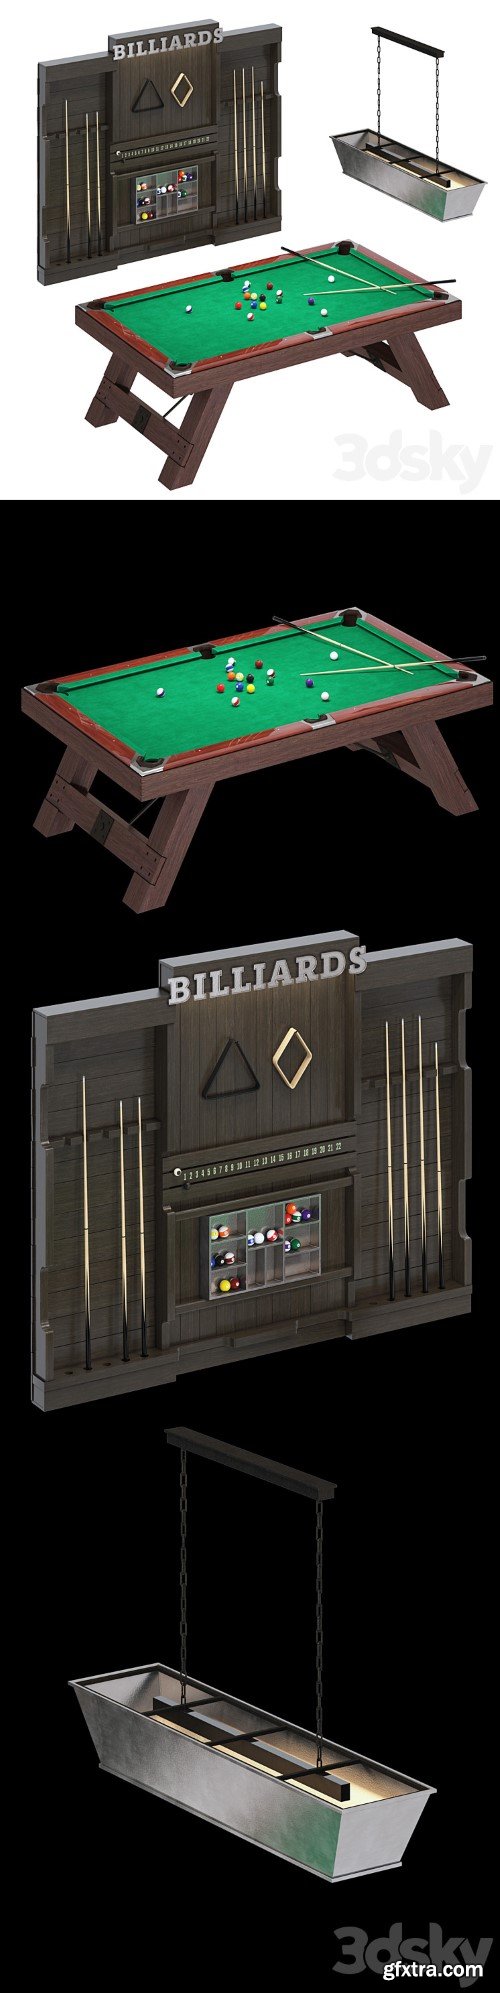 Billiards BILLIARDS